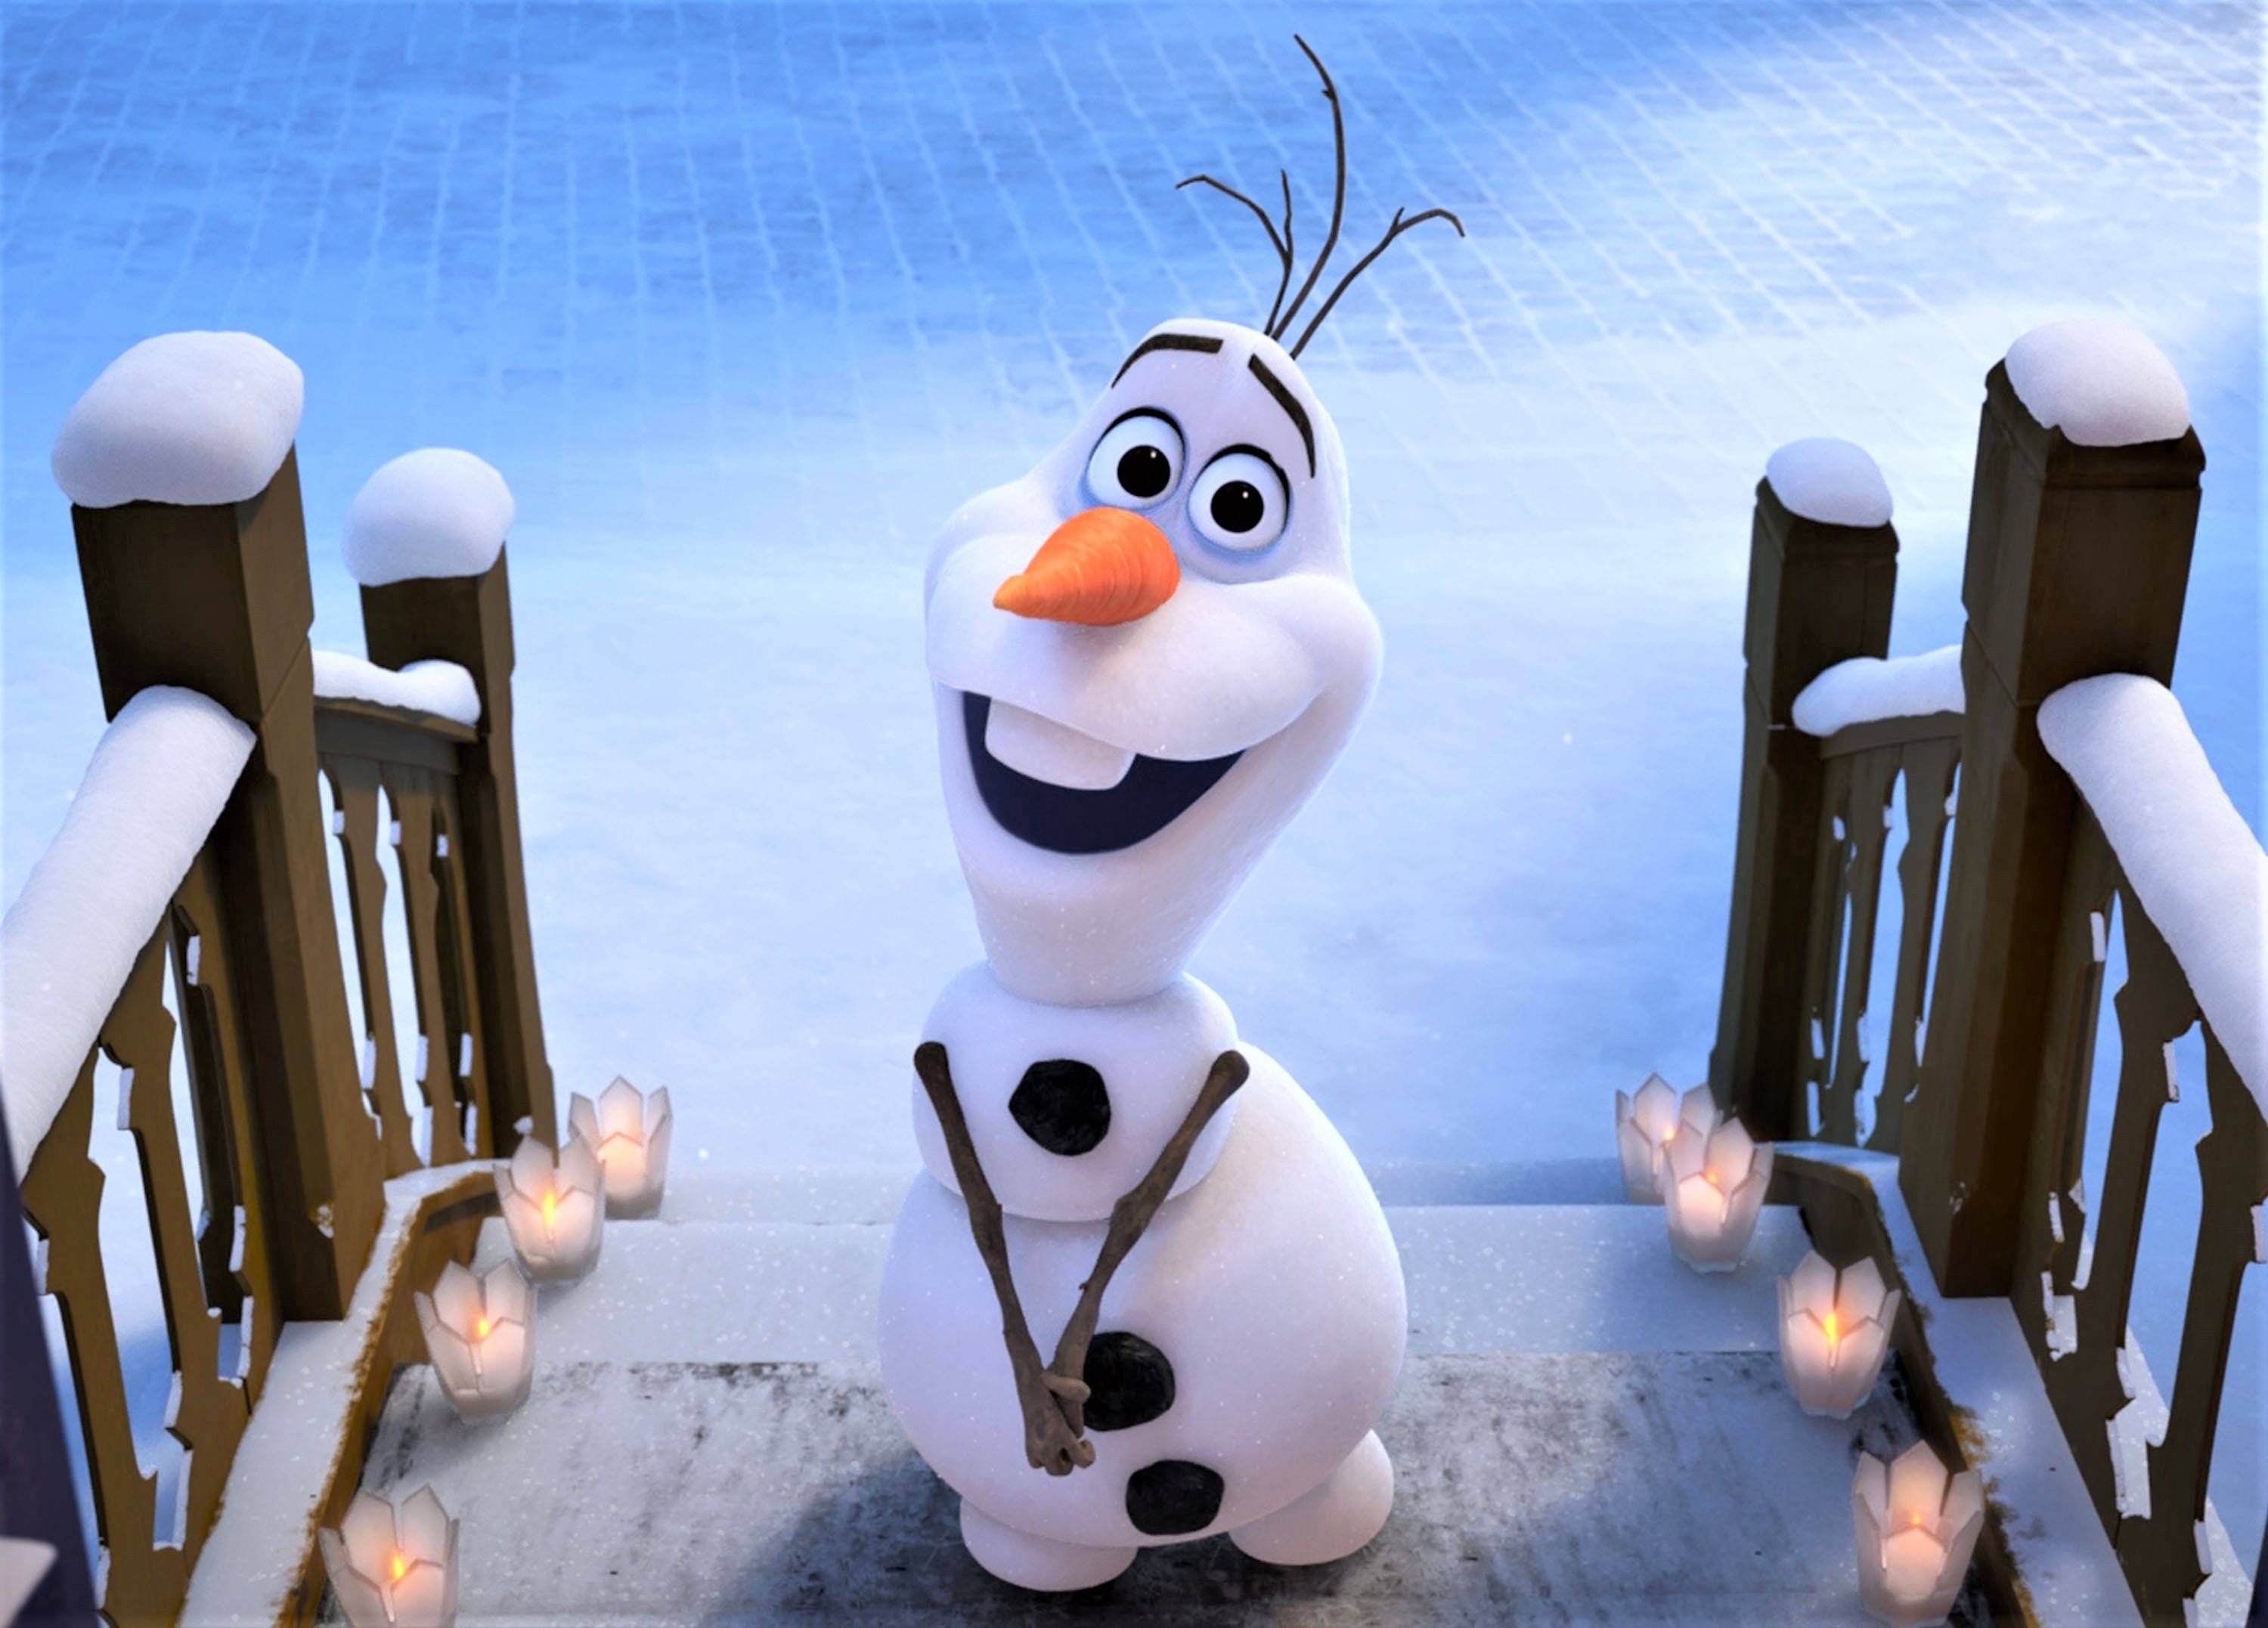 Olaf (Frozen) - Wikipedia